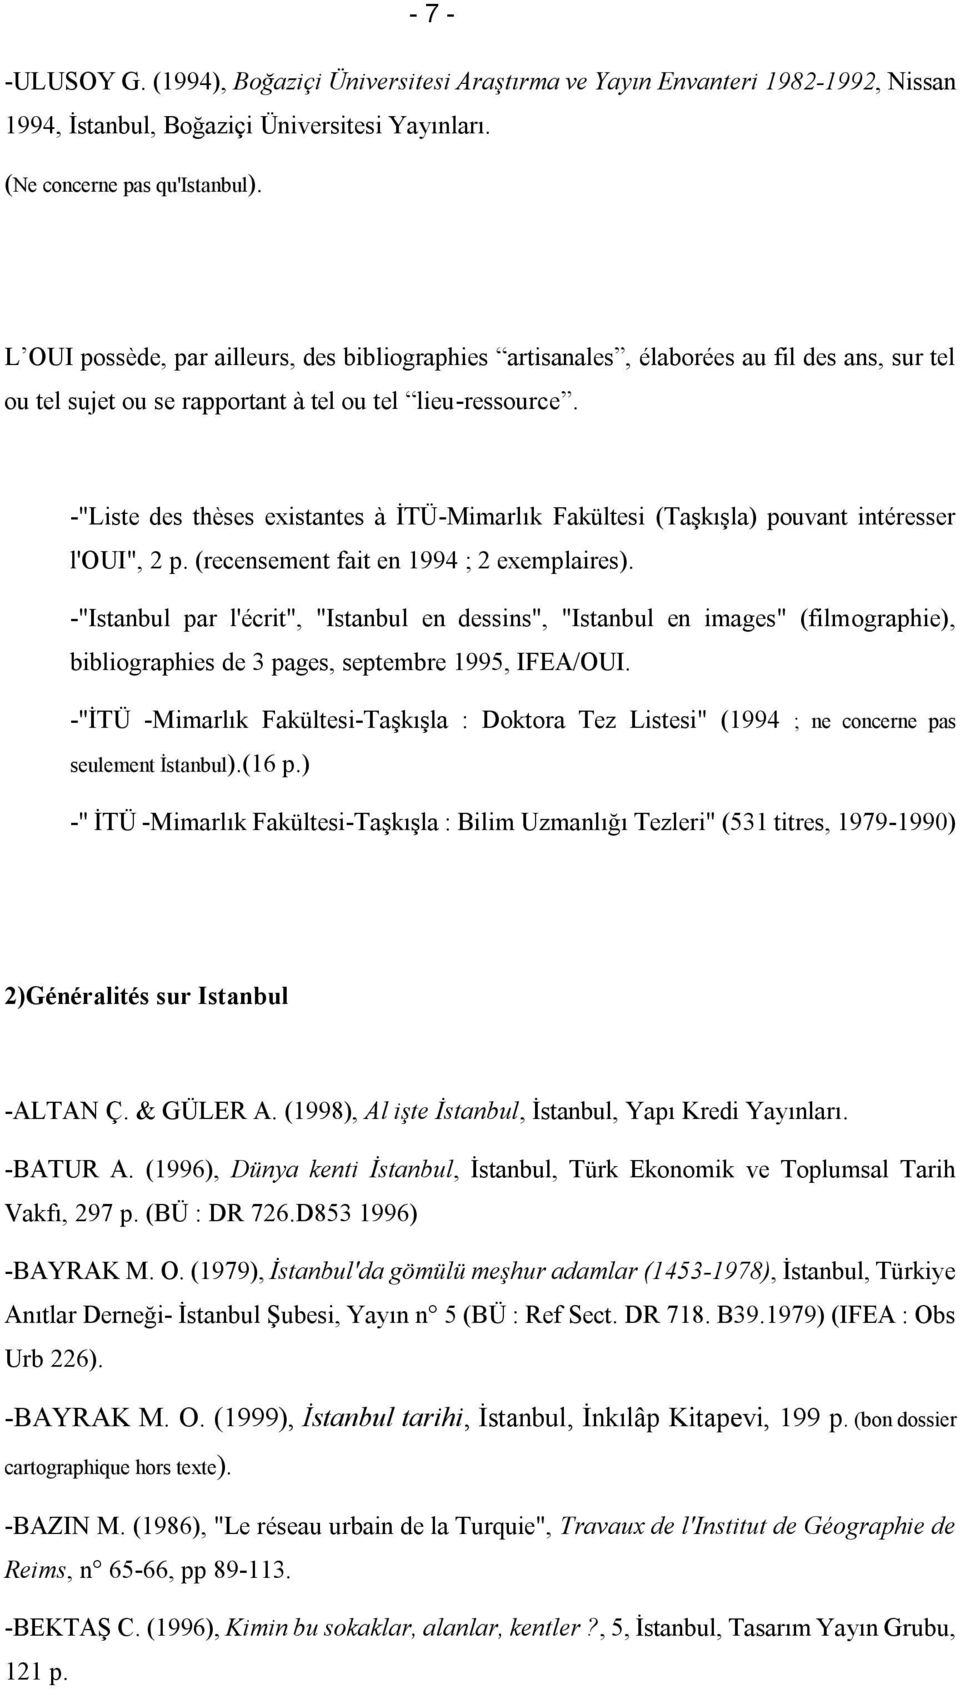 -"Liste des thèses existantes à İTÜ-Mimarlık Fakültesi (Taşkışla) pouvant intéresser l'oui", 2 p. (recensement fait en 1994 ; 2 exemplaires).